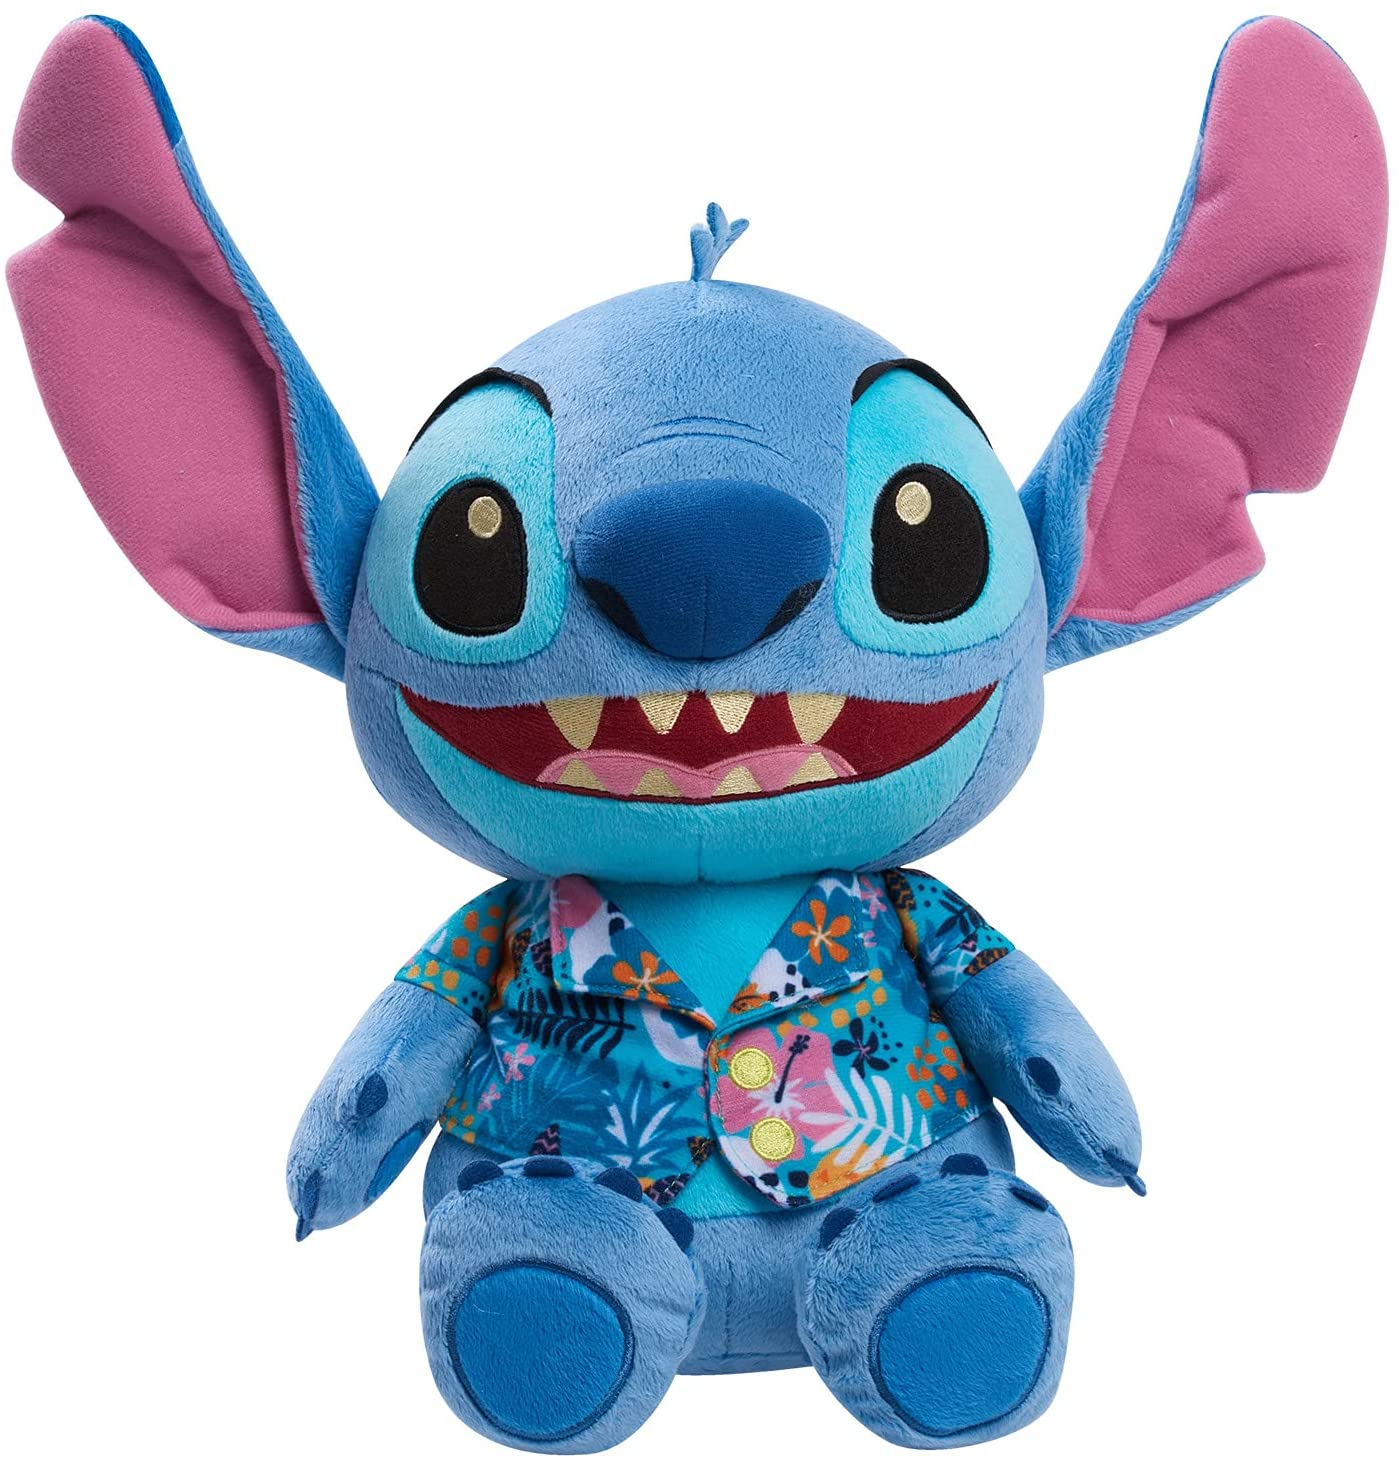 Lilo &Stitch plush toys gift New 22'' Stitch Plush Pillow Plush Toy Pet Doll New 